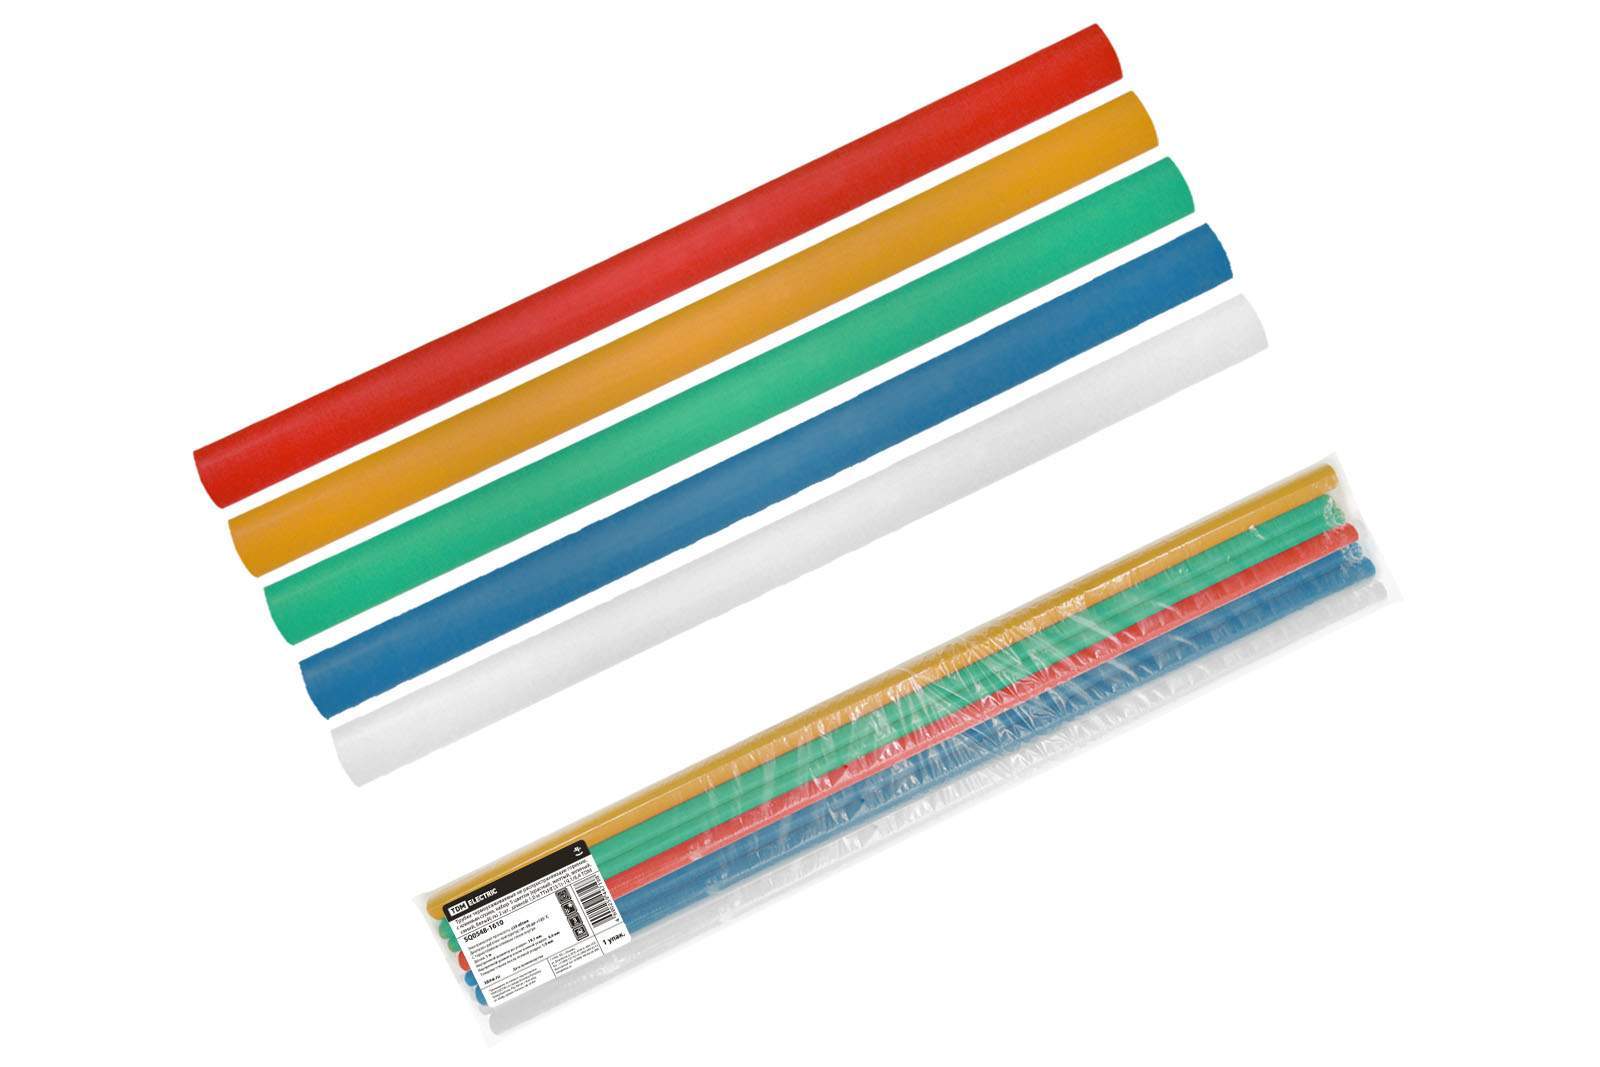 трубки термоусаживаемые, клеевые, набор 5 цветов по 2 шт. тткнг(3:1)-19,1/6,4 tdm от BTSprom.by